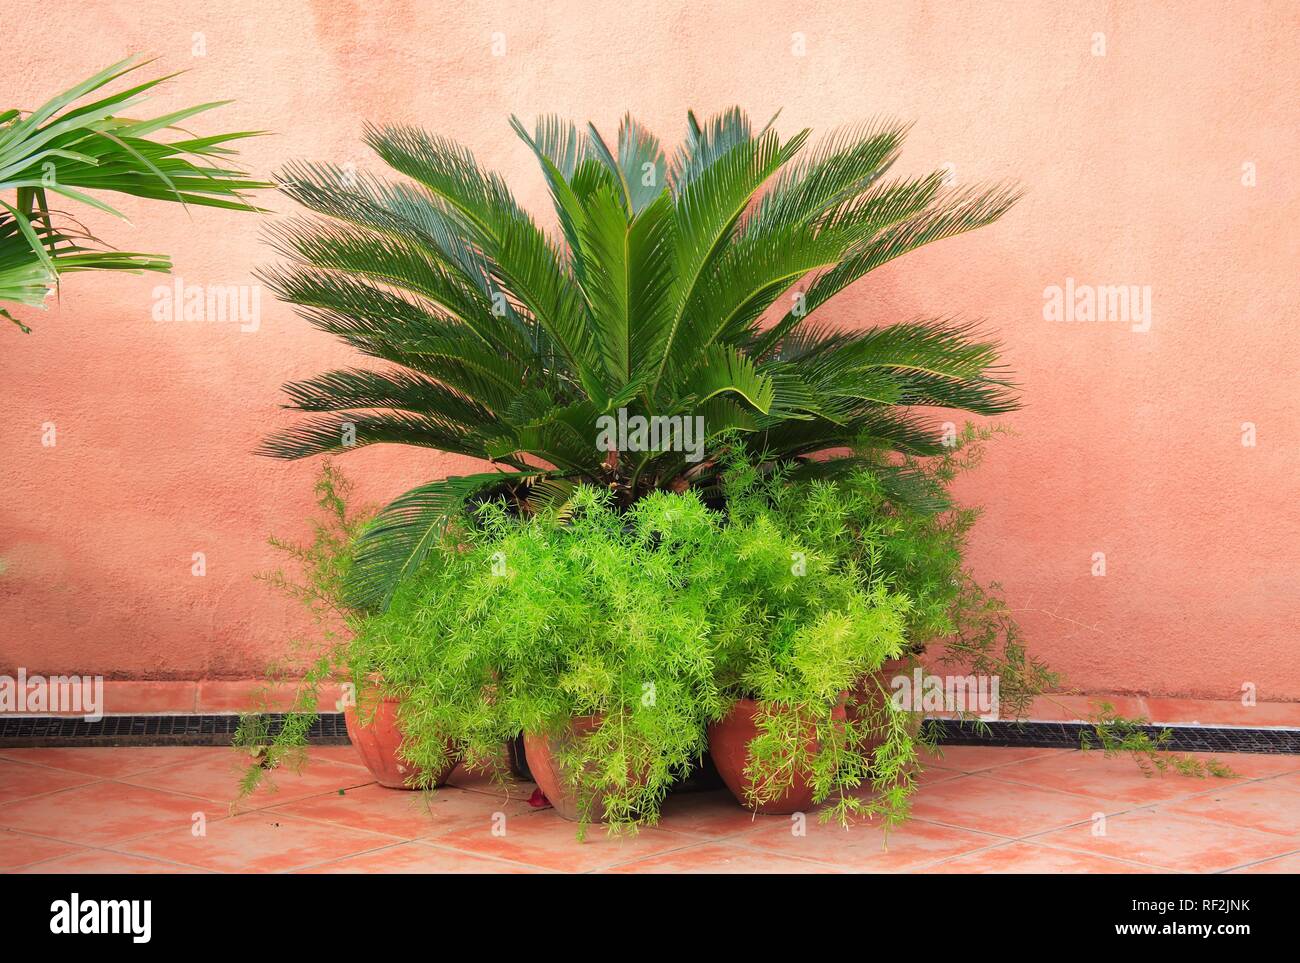 Plantes en pot en face d'un mur rose et idyllique, vivant à La Havane, Cuba, Caraïbes Banque D'Images